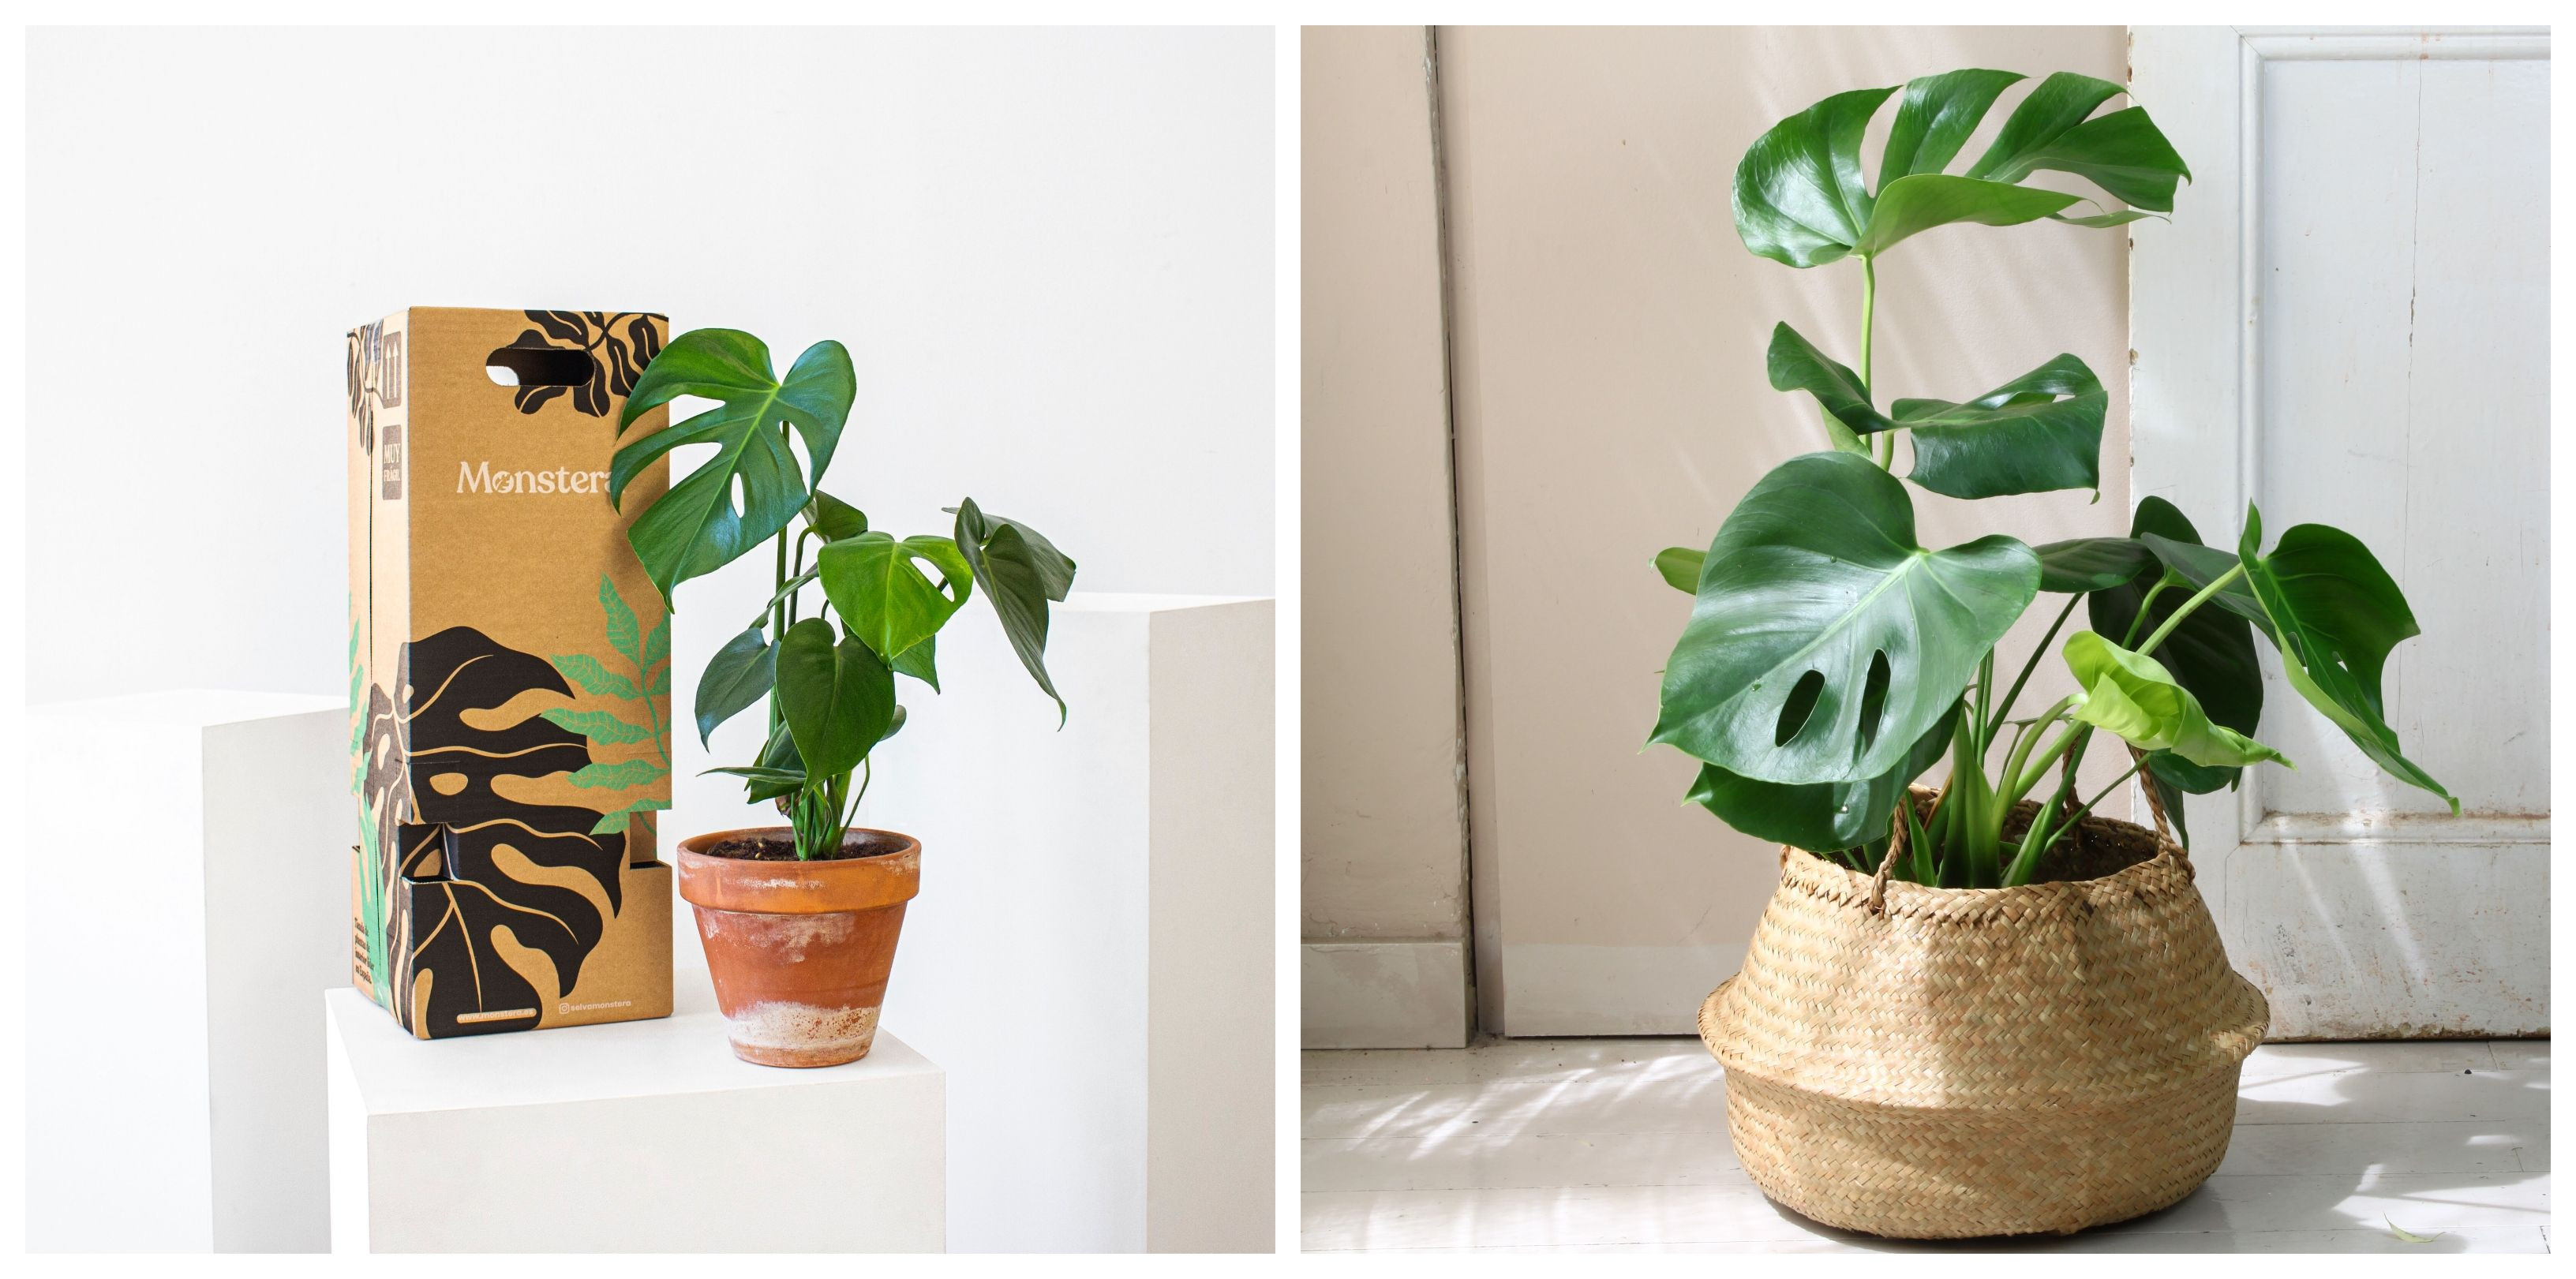 Dos ejemplos de la planta monstera, una de ellas de la compañía Monstera / CEDIDA